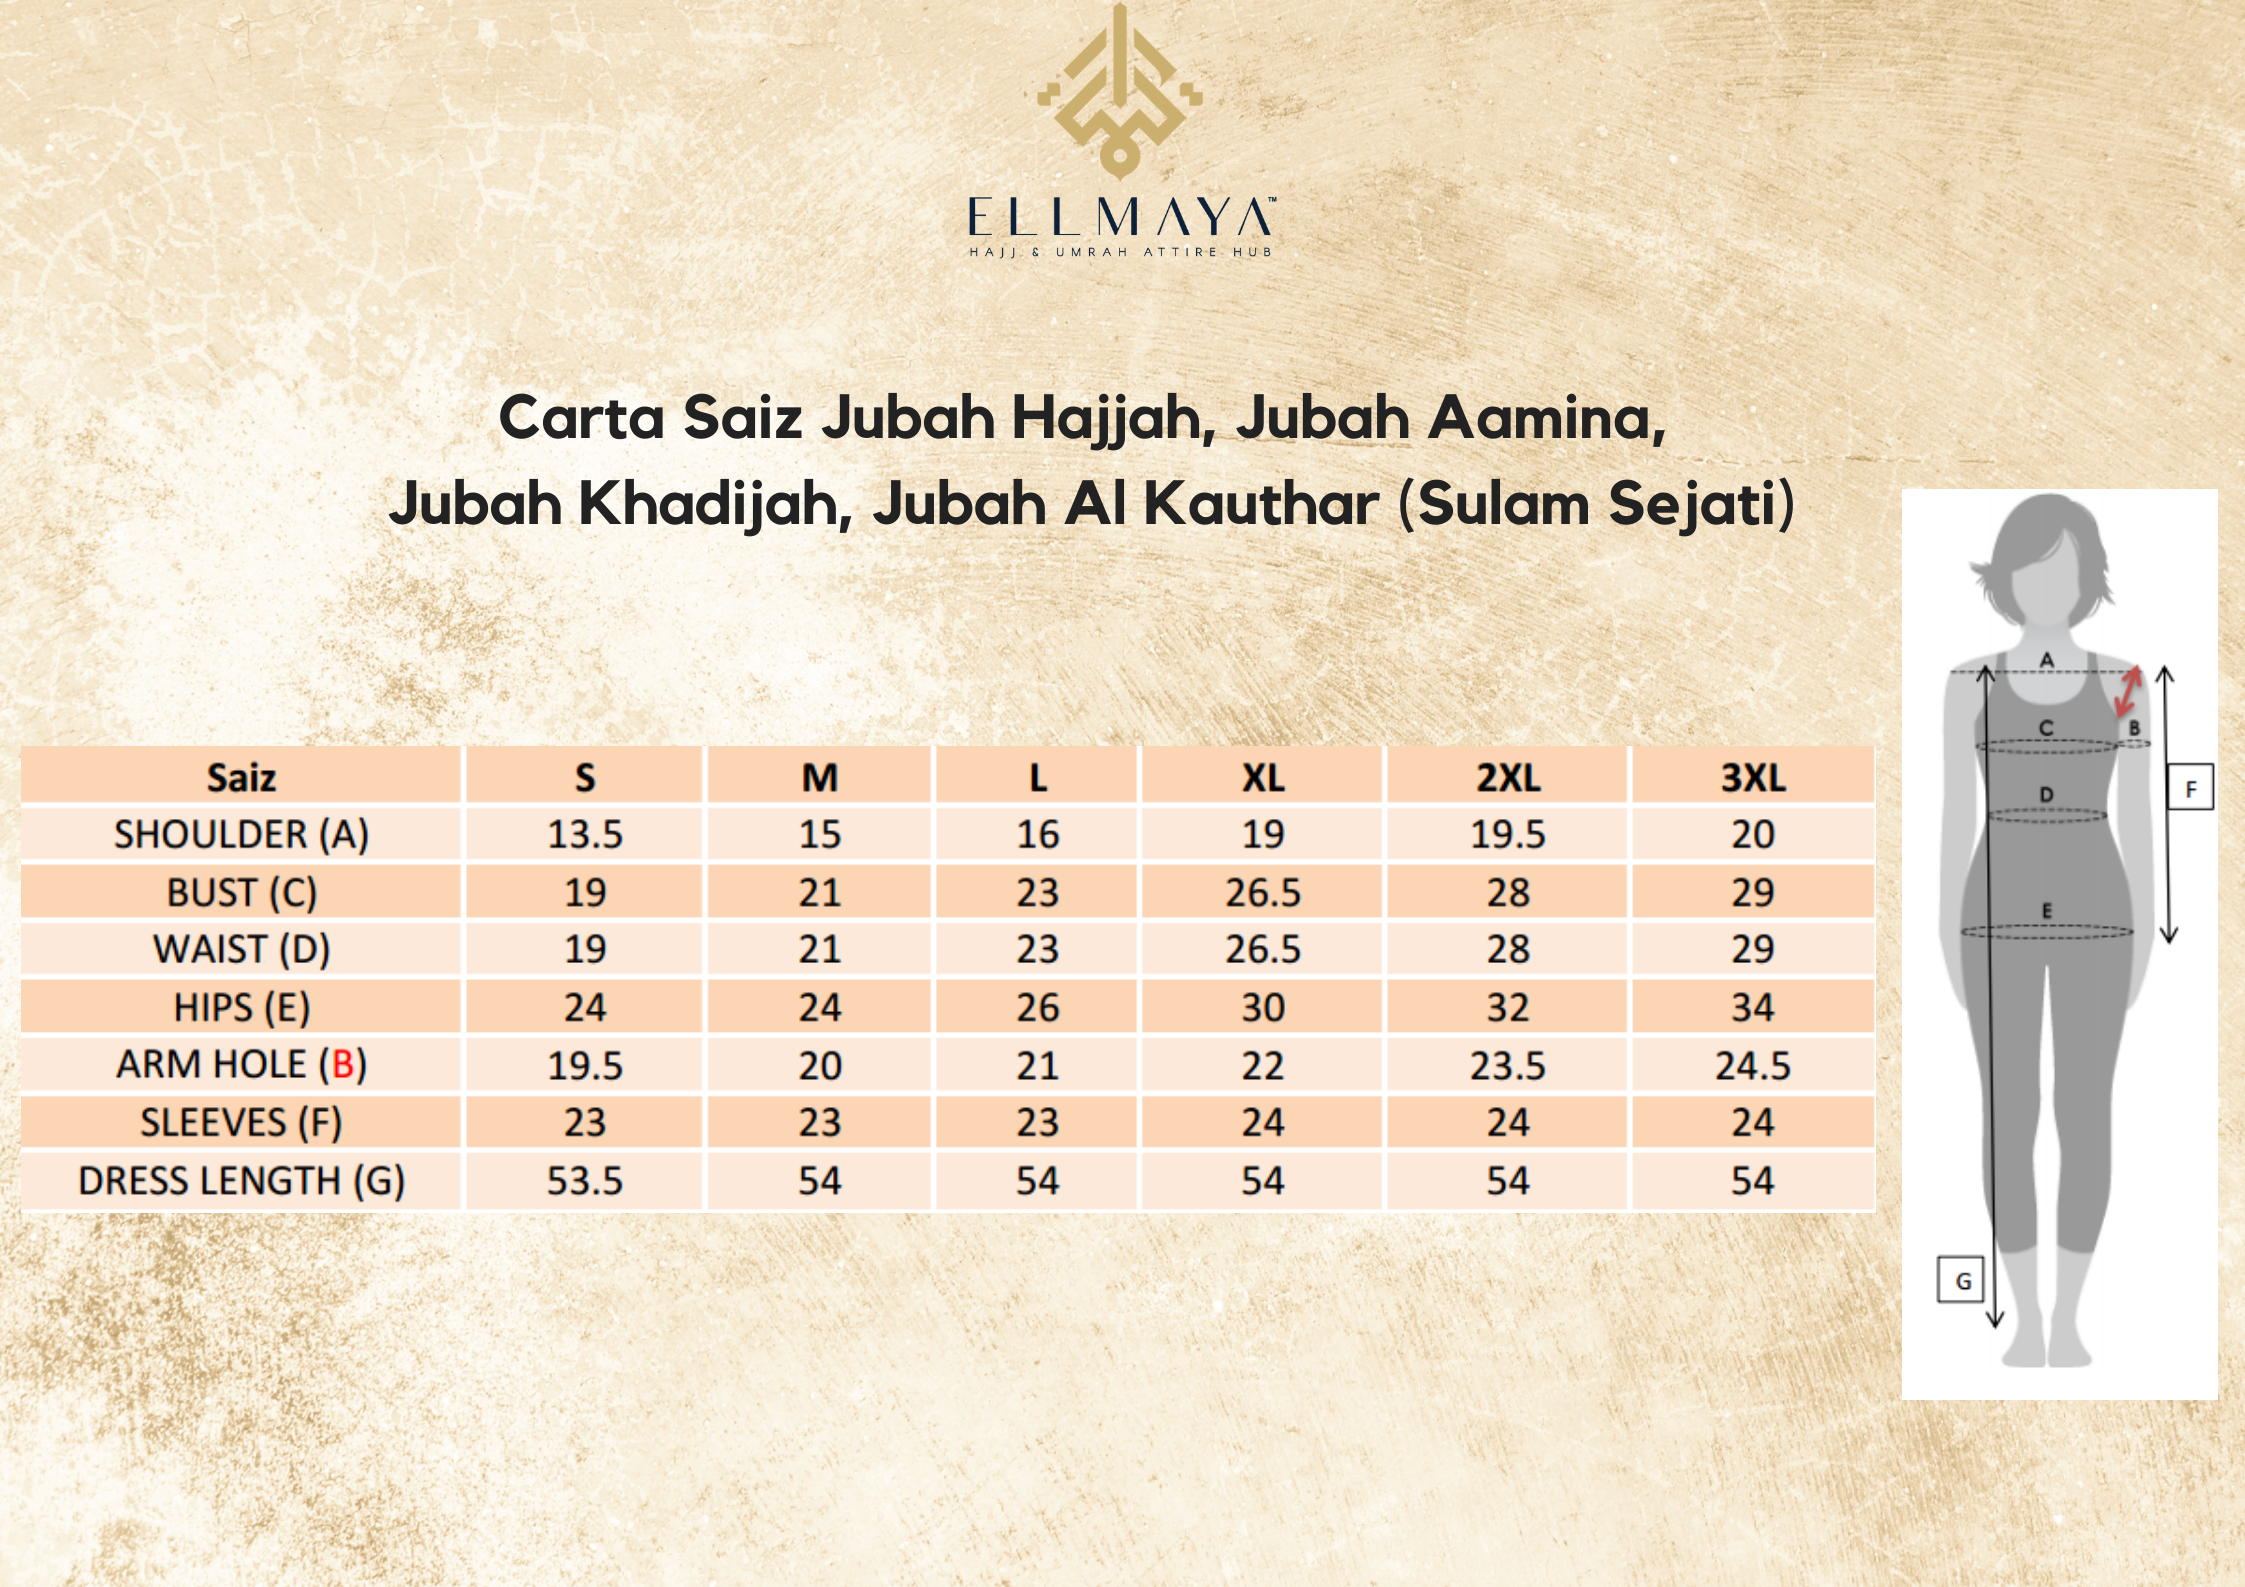 Carta Saiz Jubah Hajjah, Jubah Aamina, Jubah Khadijah, Jubah Al Kauthar (Sulam Sejati).png